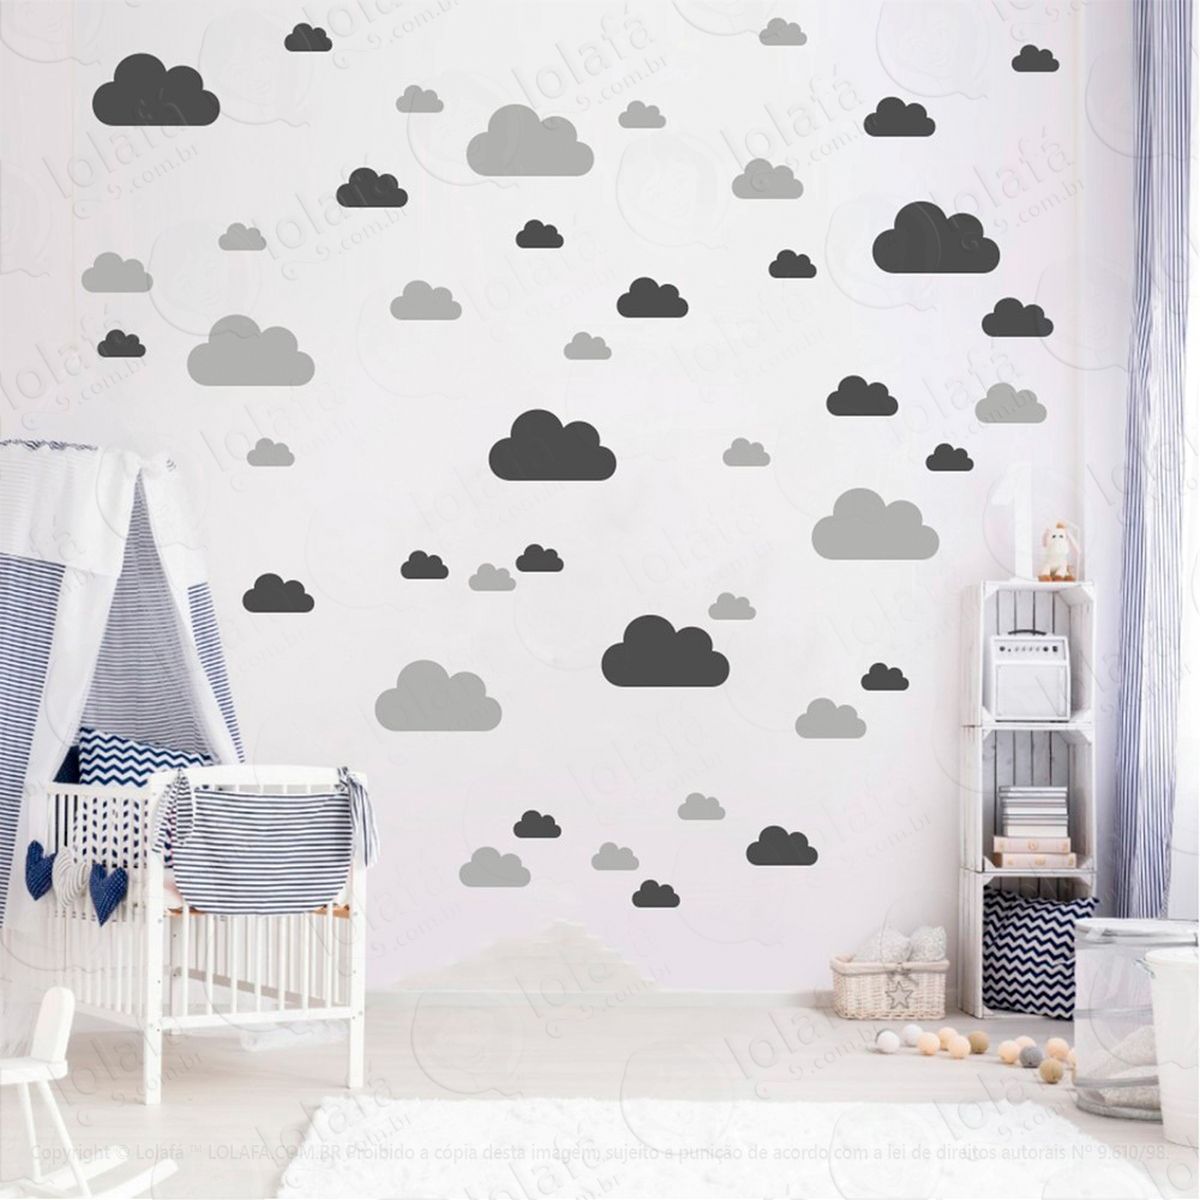 adesivos nuvens 78 peças adesivos para quarto de bebê infantil - mod:756